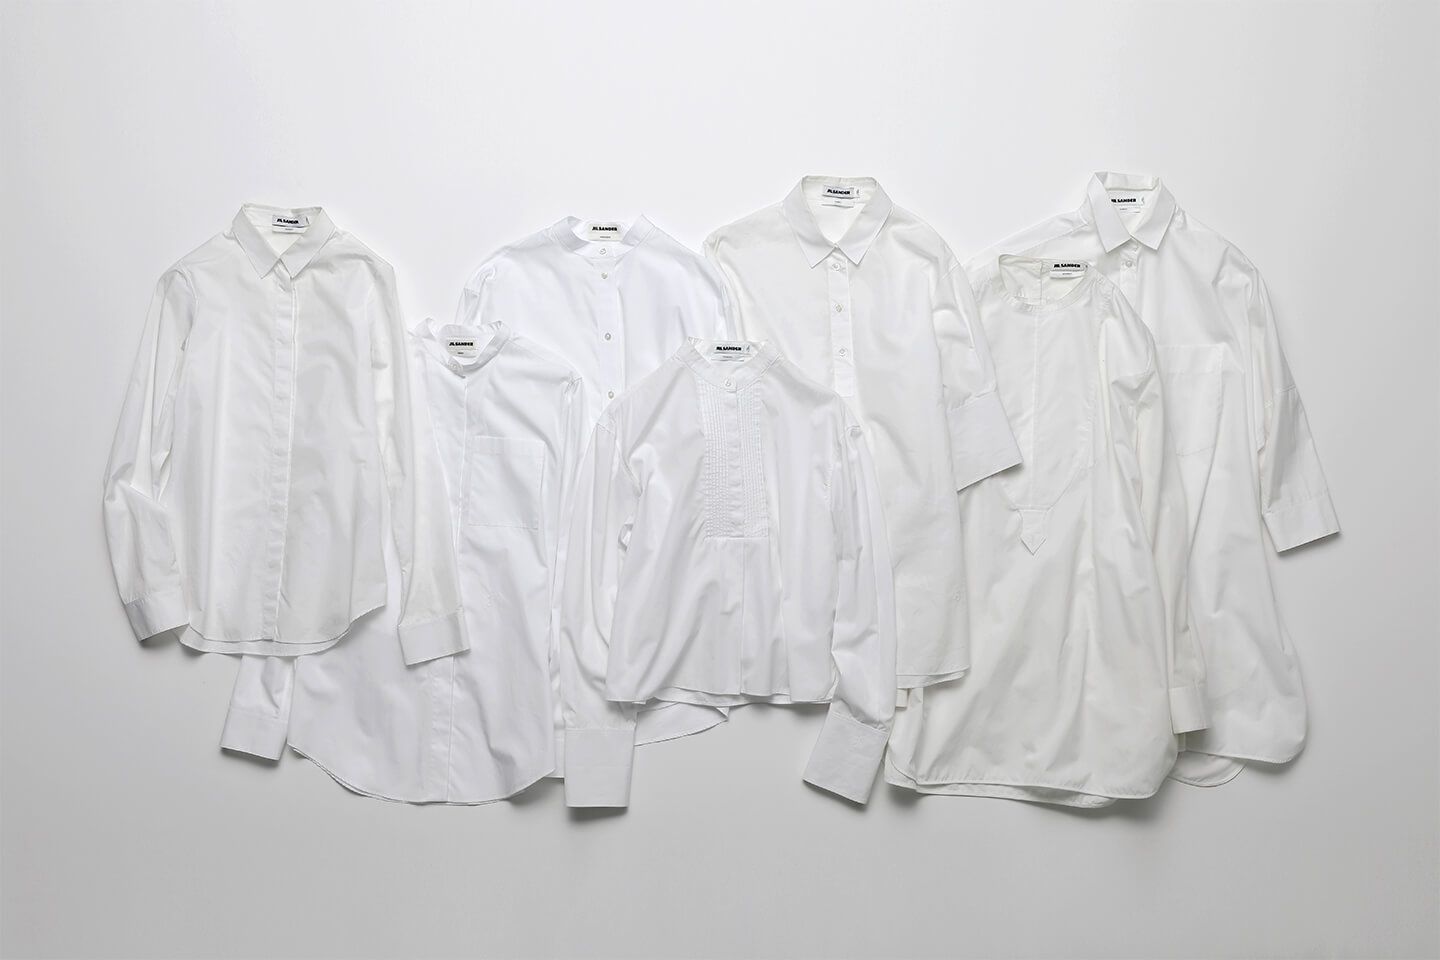 有名スタイリストが選ぶ“着回し力の高い上質な白シャツ”は「ジル サンダーの 7デイズ シャツ」 | Precious.jp（プレシャス）